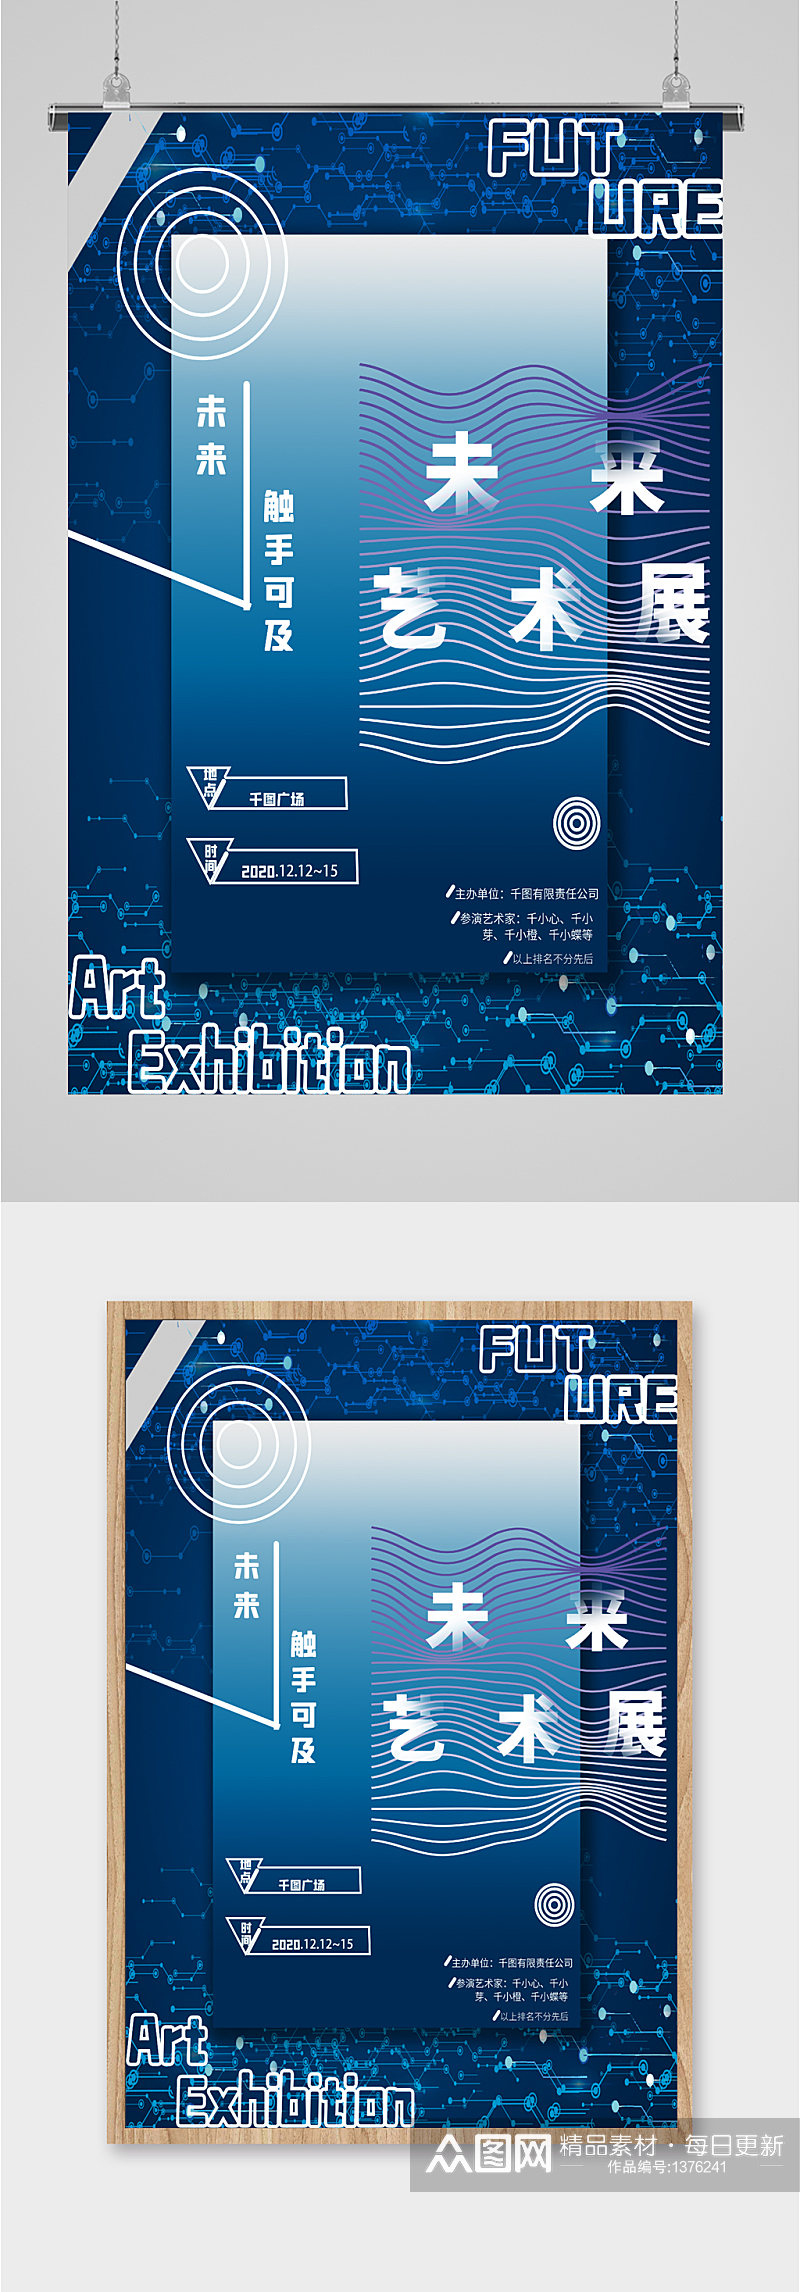 艺术节艺术展览会宣传海报素材